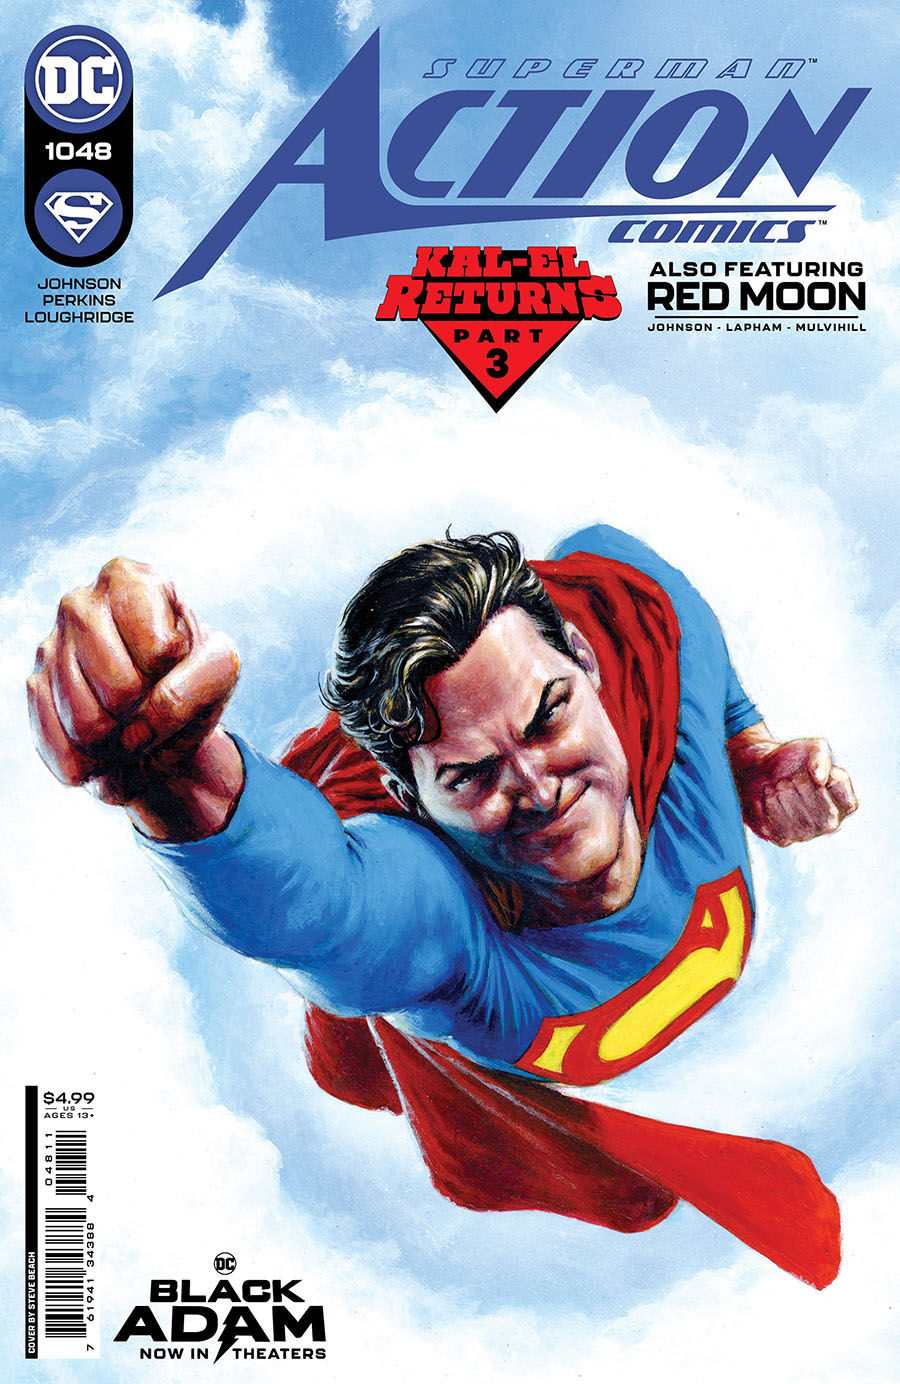 Action Comics Vol 2 #1048 Cover A Regular Steve Beach Cover (Kal-El Returns Part 3)